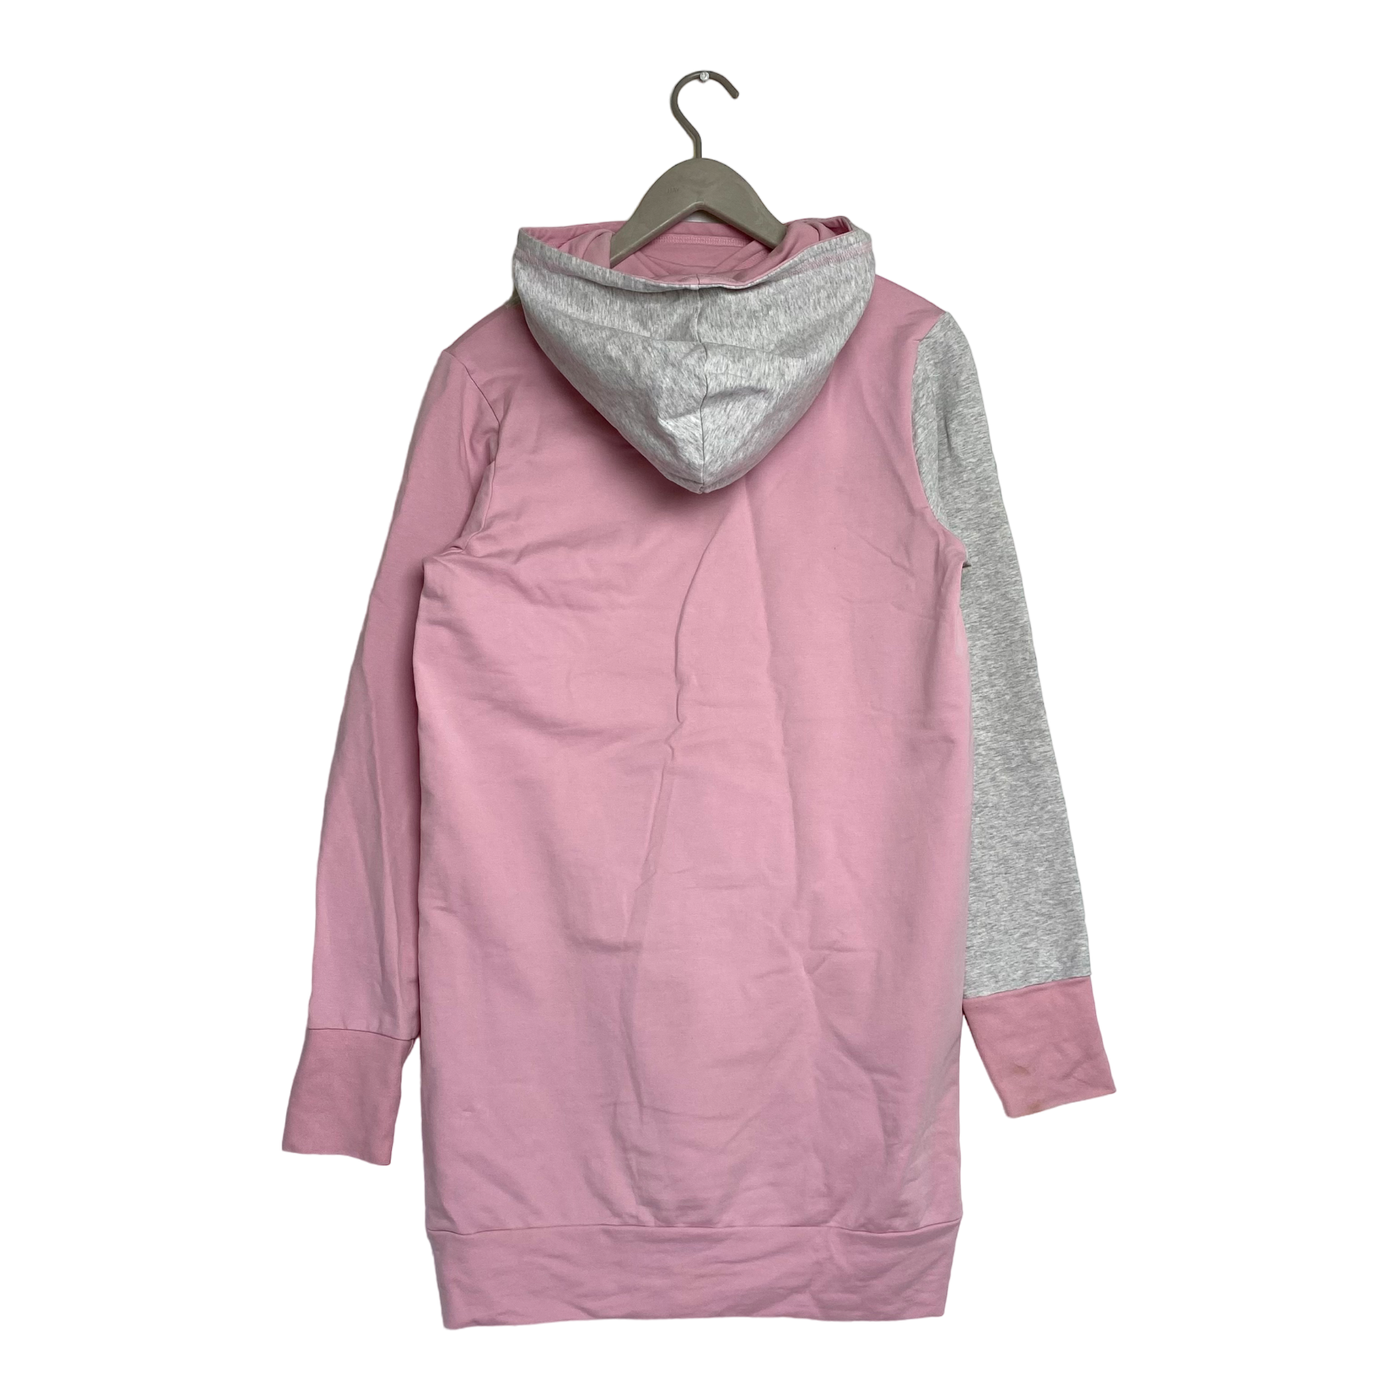 Ommellinen hoodie dress, pink/silver | woman M